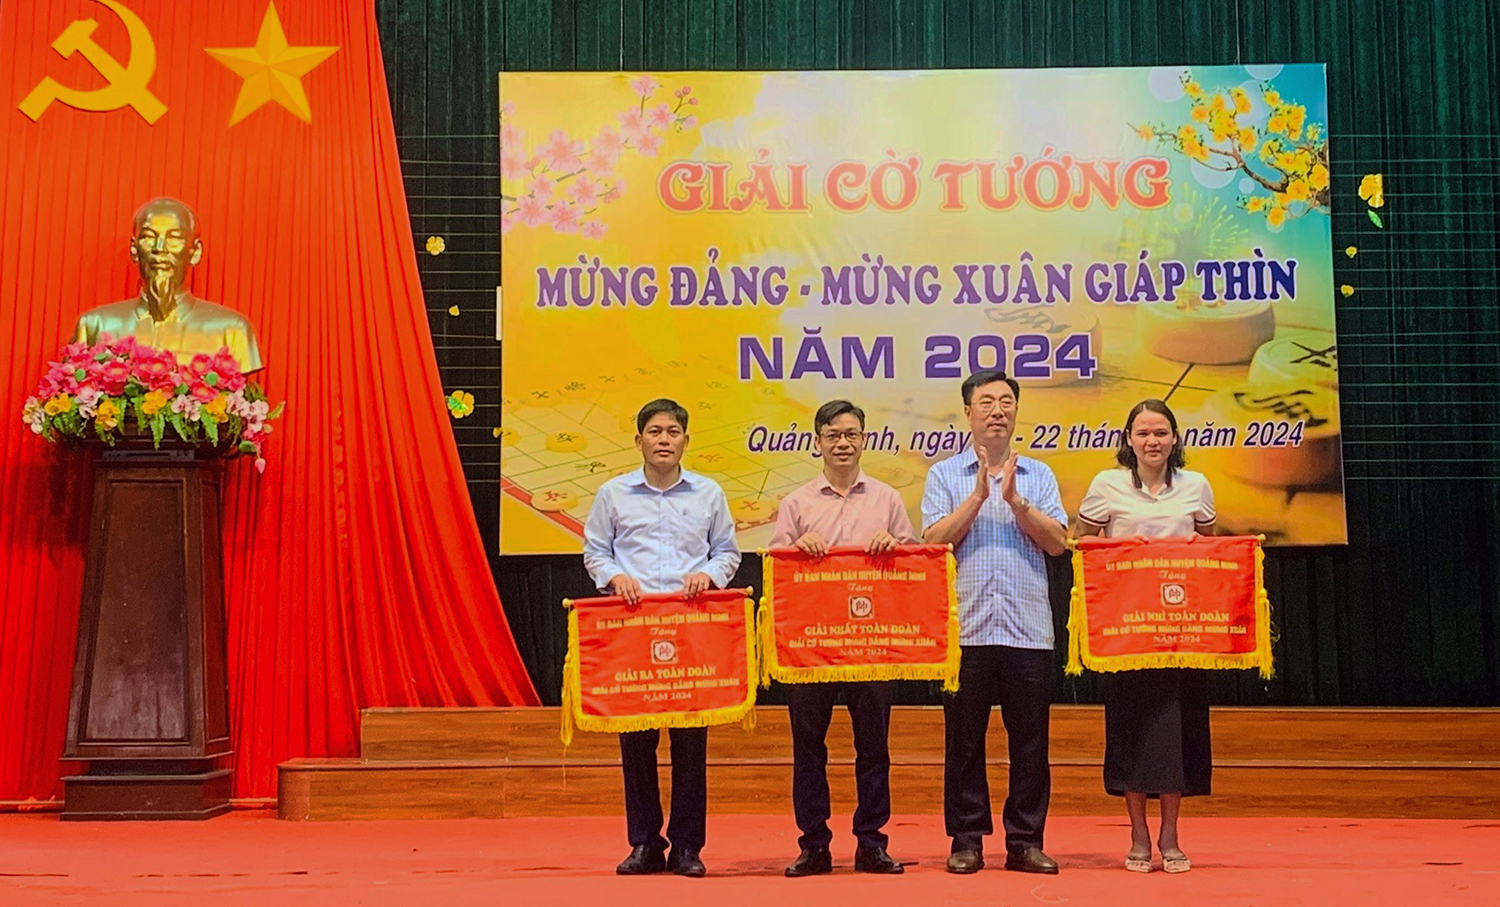 Quảng Ninh: Tổ chức giải cờ tướng mừng Đảng, mừng xuân Giáp Thìn 2024